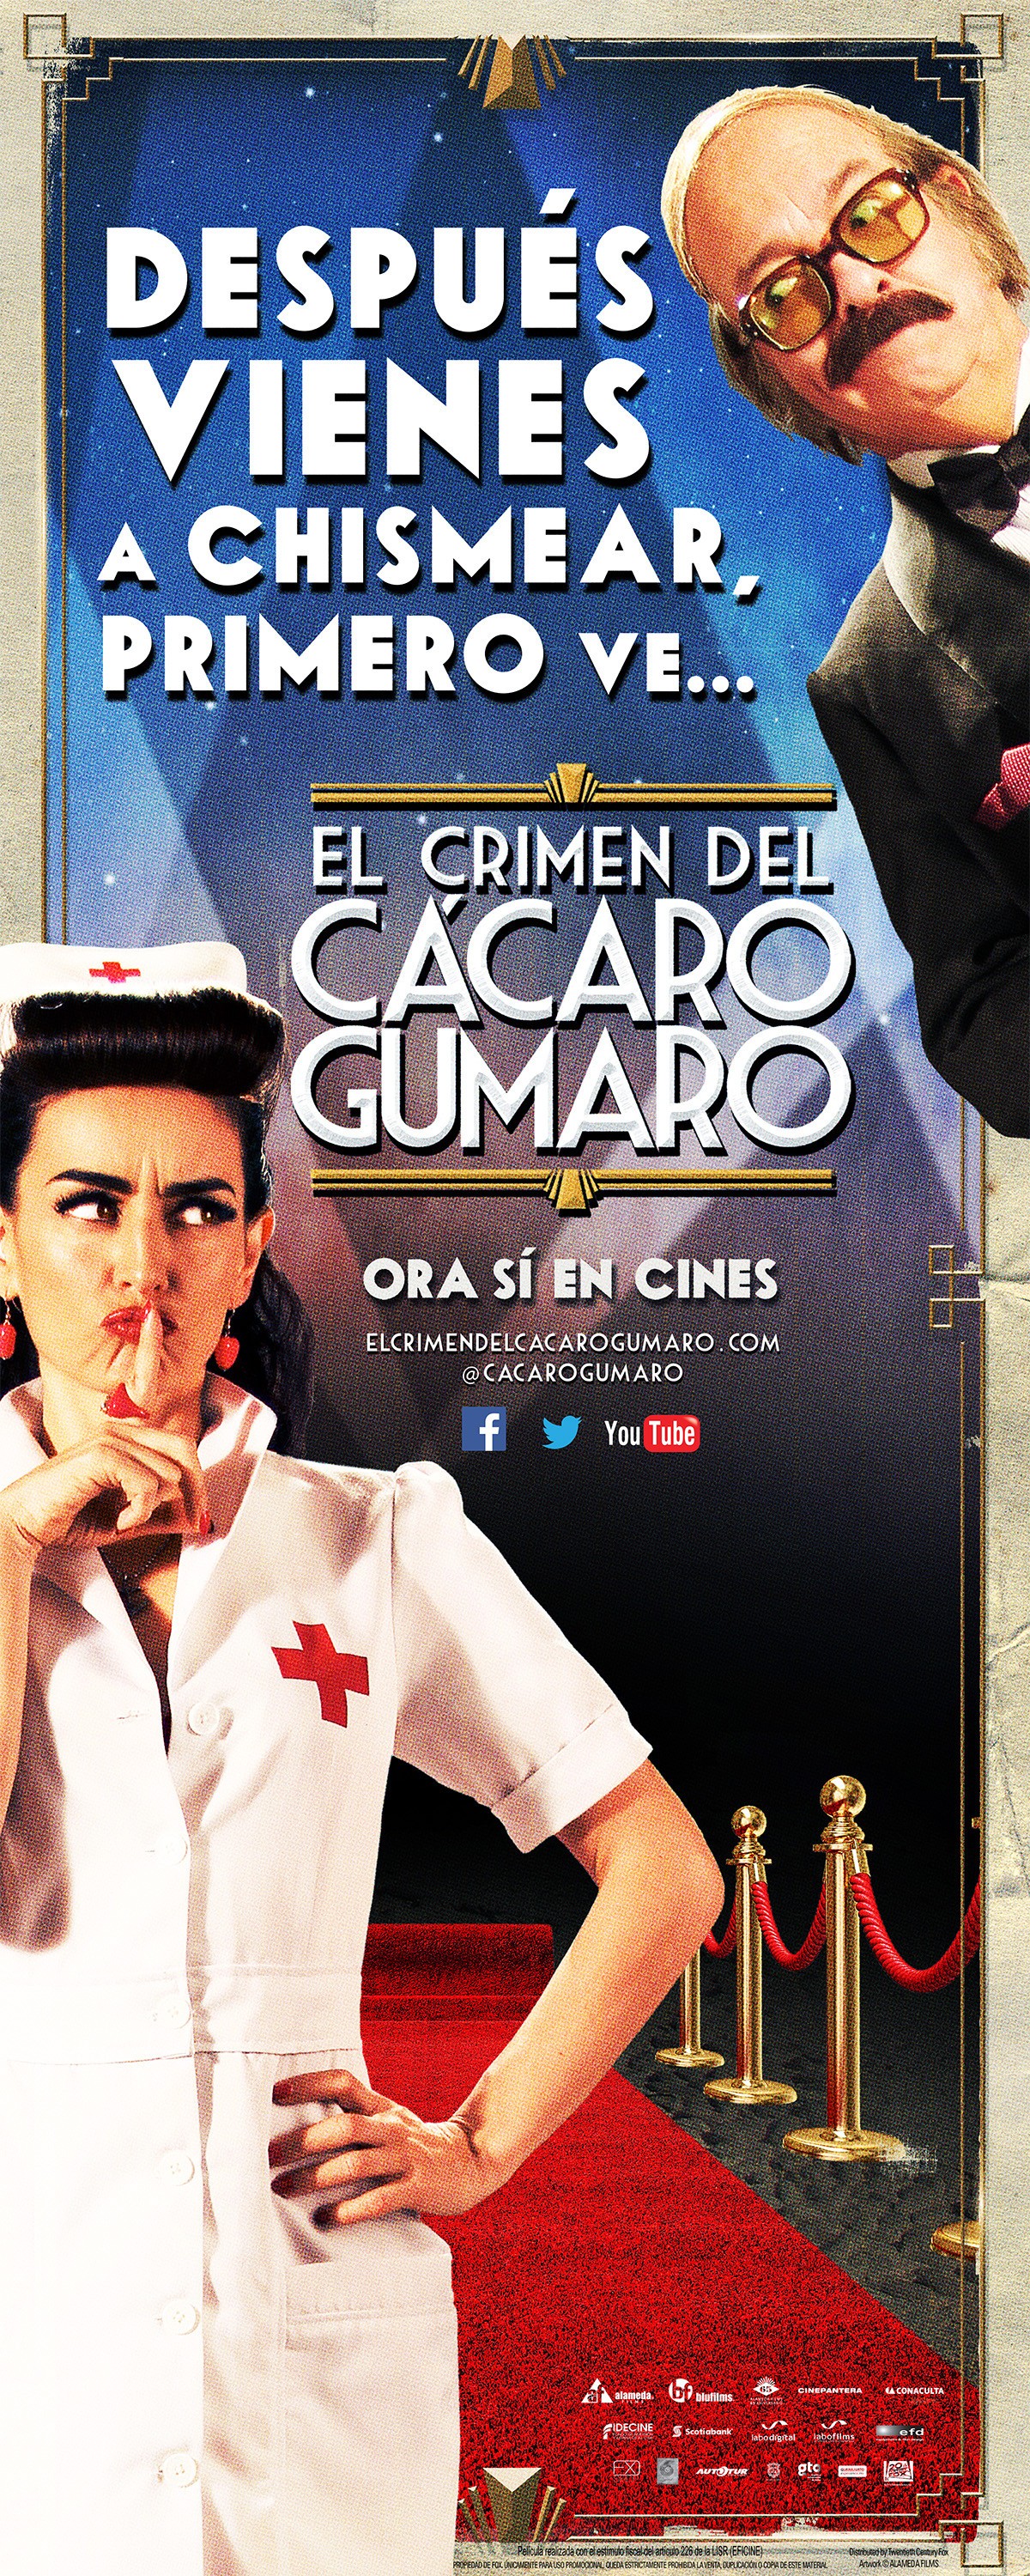 Mega Sized Movie Poster Image for El Crimen del Cacaro Gumaro (#8 of 12)